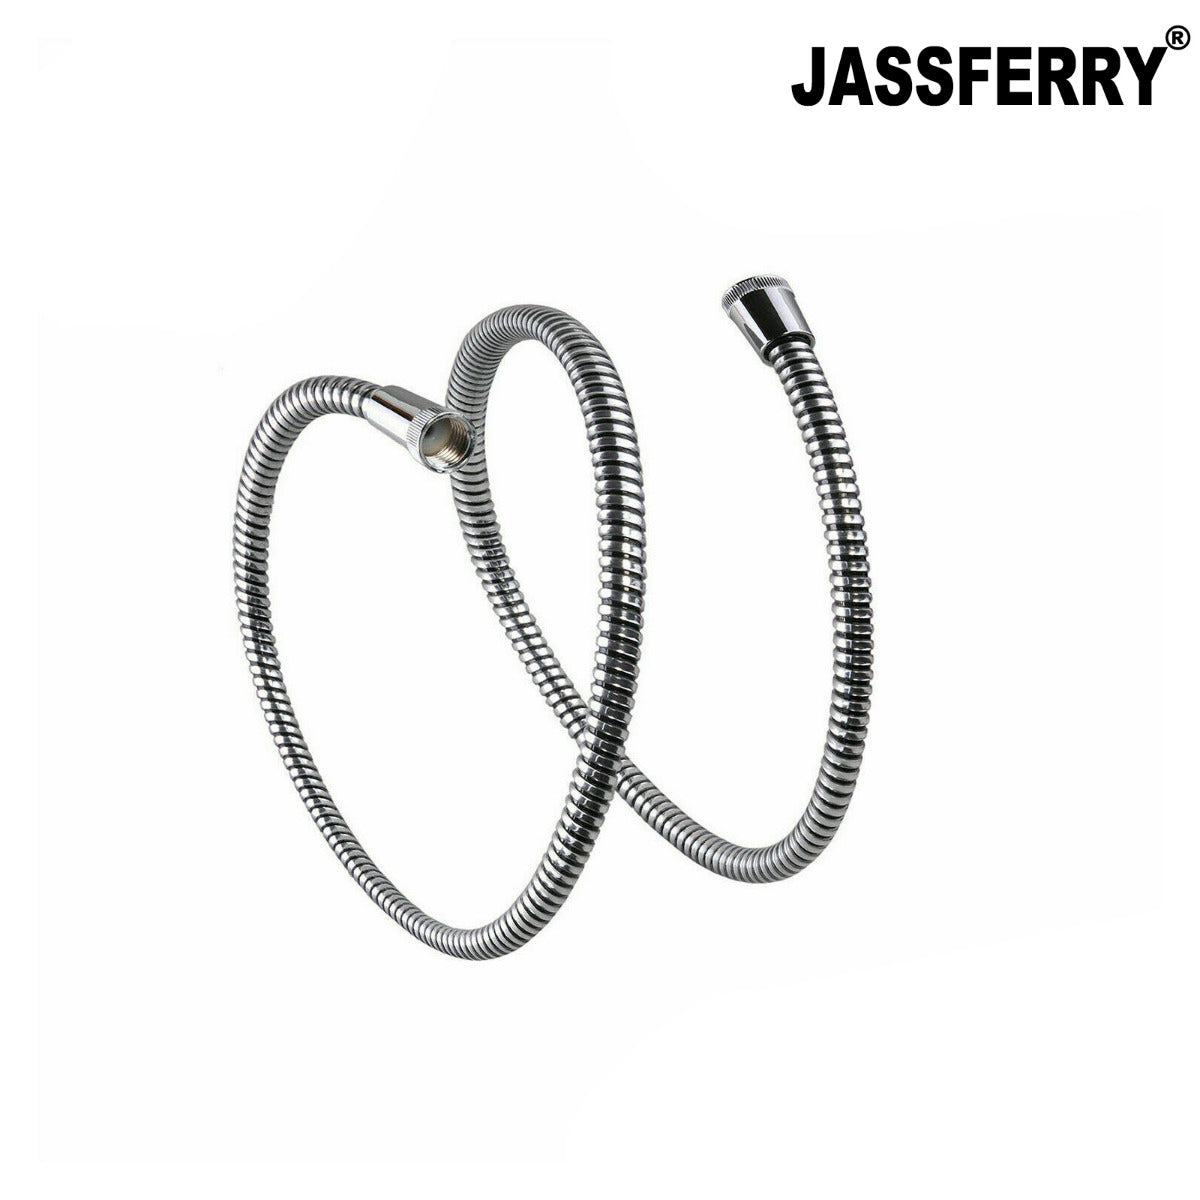 JassferryJASSFERRY New 1.5M(59-Inch) Shower Hose Reinforced Mylar PVC ReplacementShower Heads